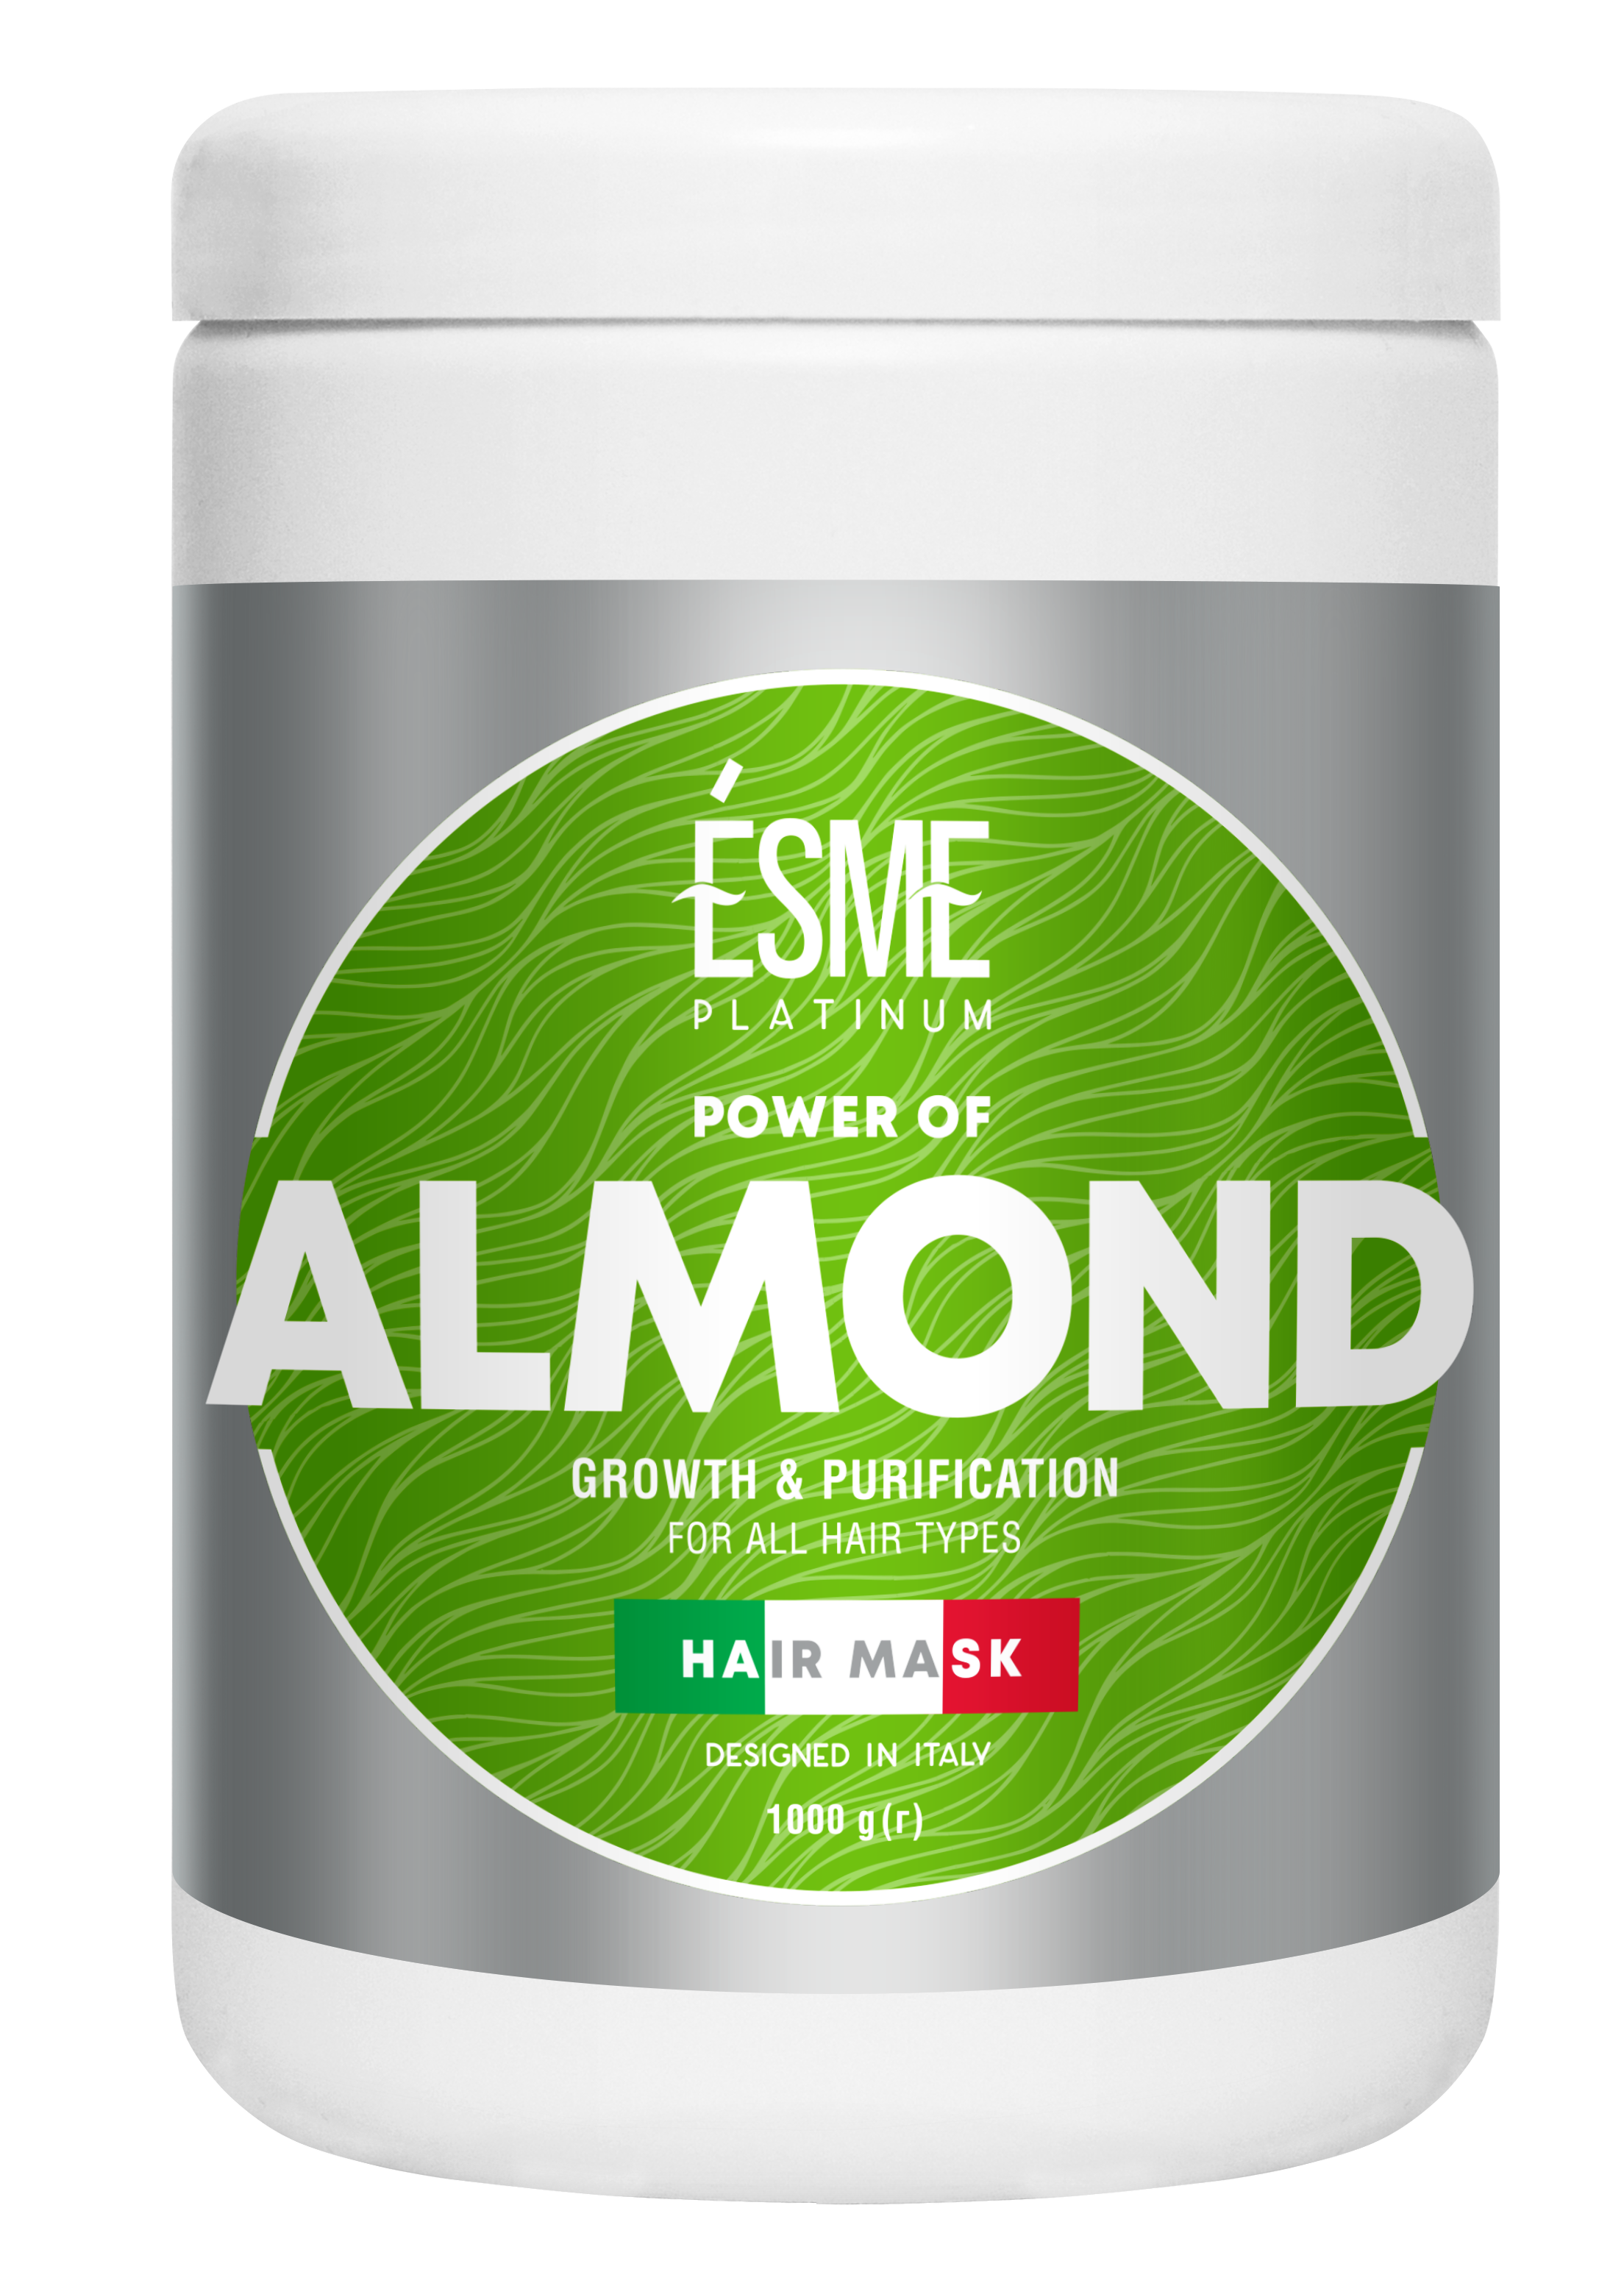 Маска Esme Platinum Almond з мигдальним маслом, для всіх типів волосся, 1000 мл - фото 1